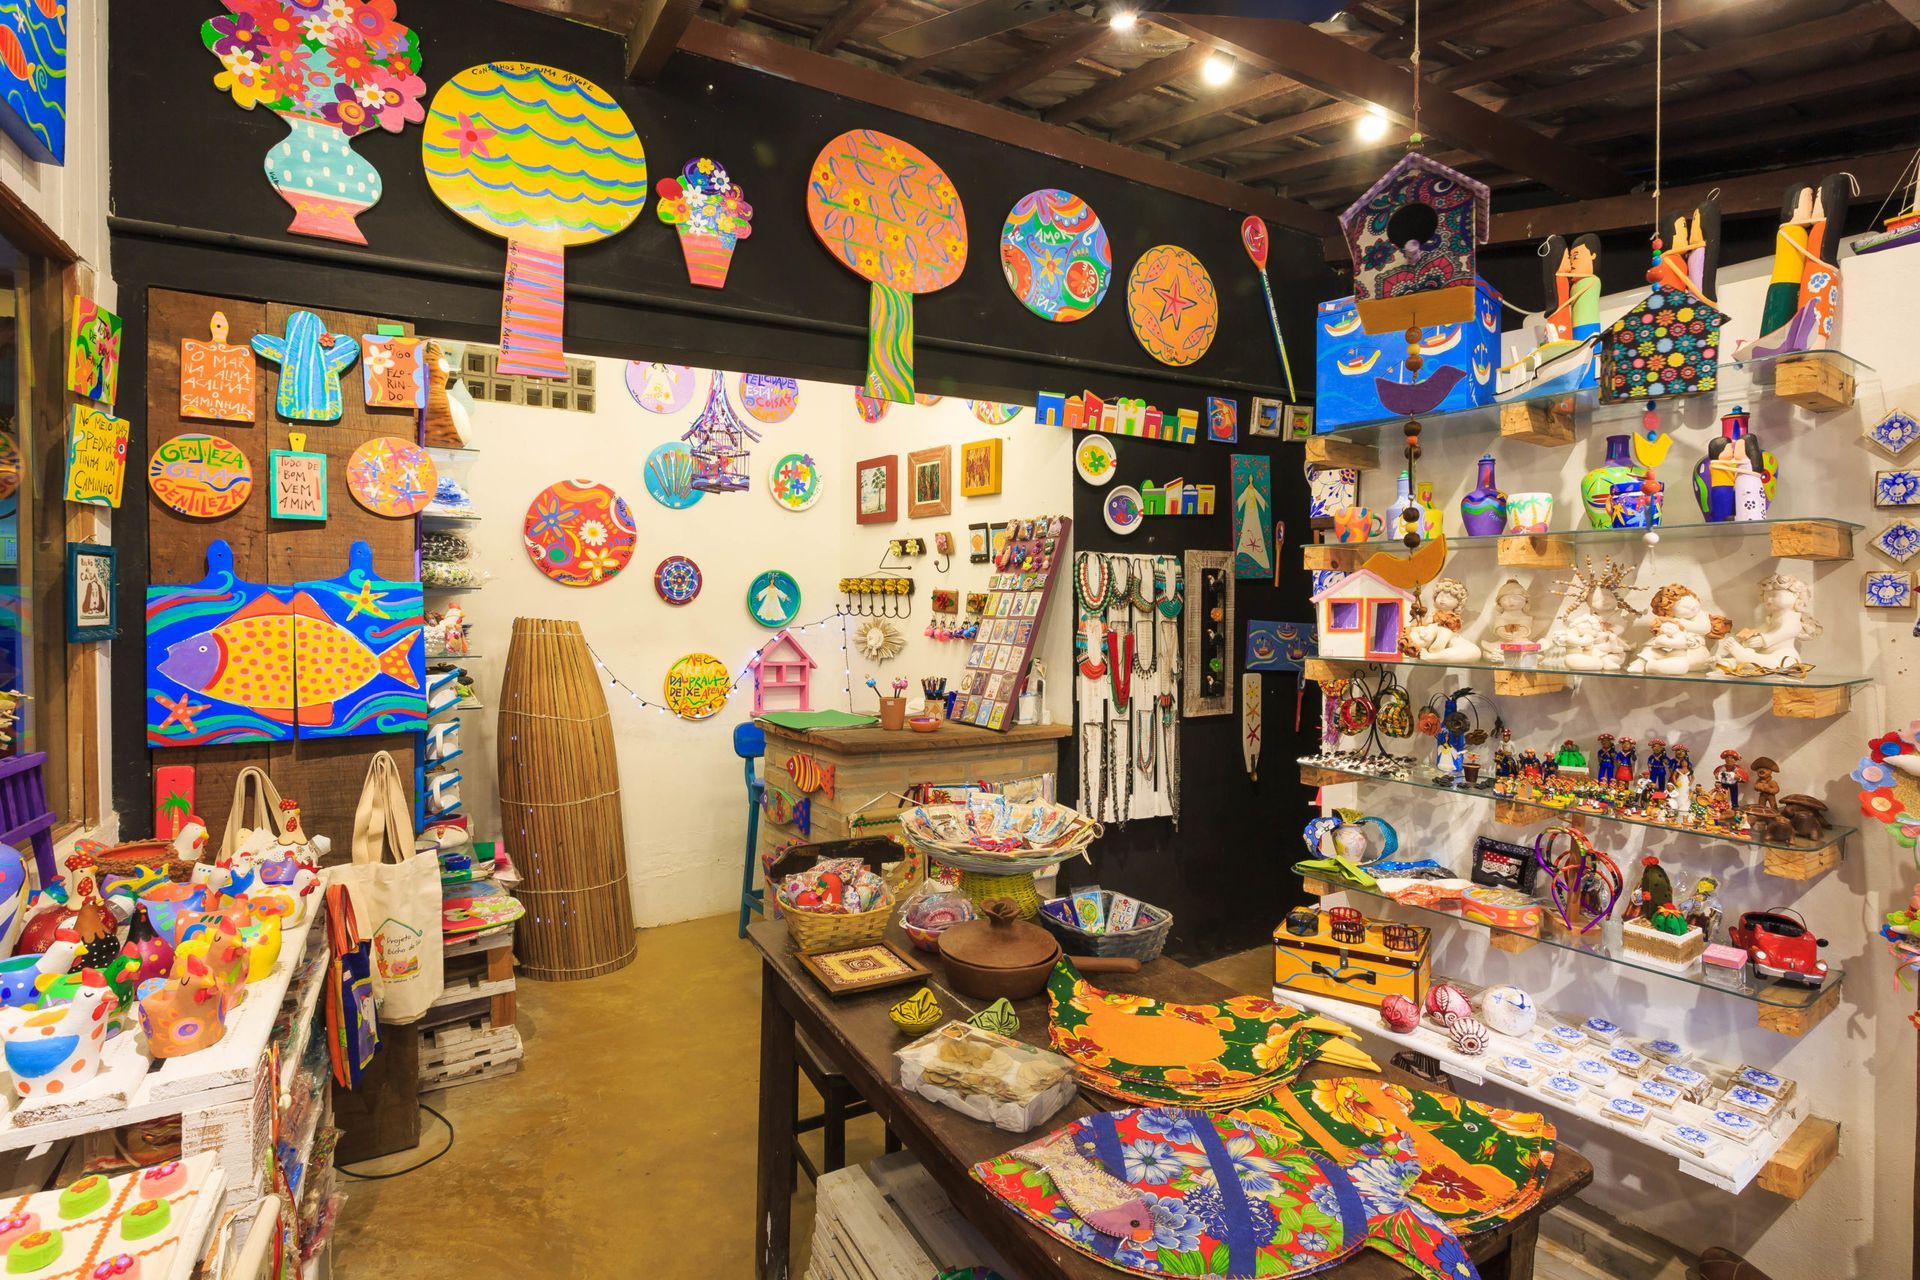 Uma loja repleta de brinquedos e pinturas nas paredes